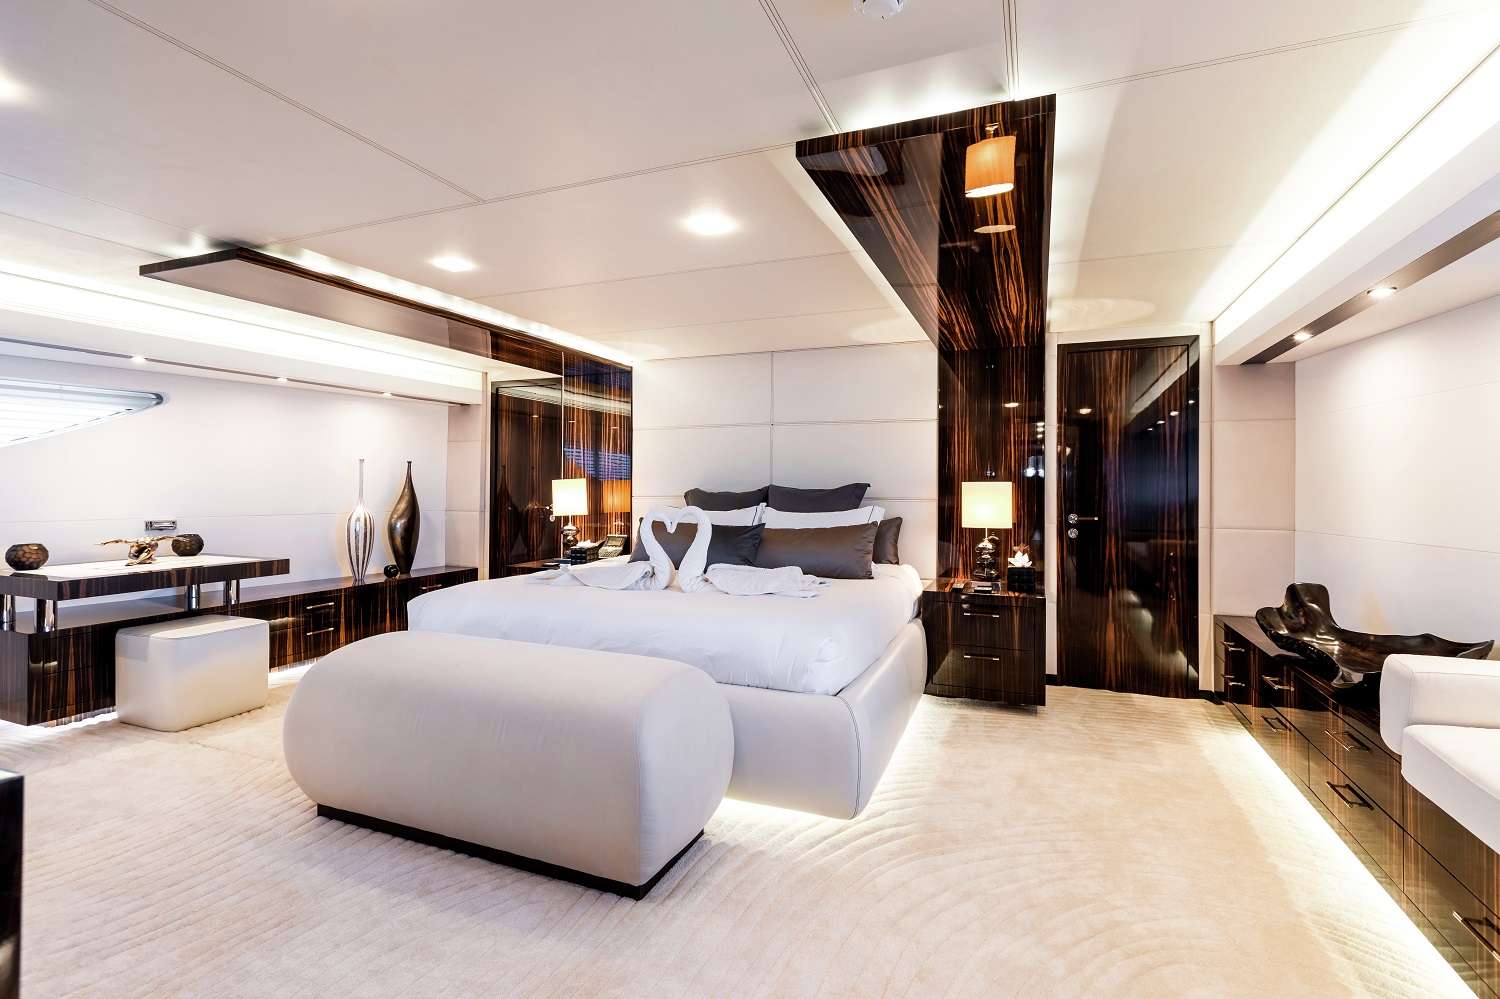 Gems II Yacht Charter - Master cabin